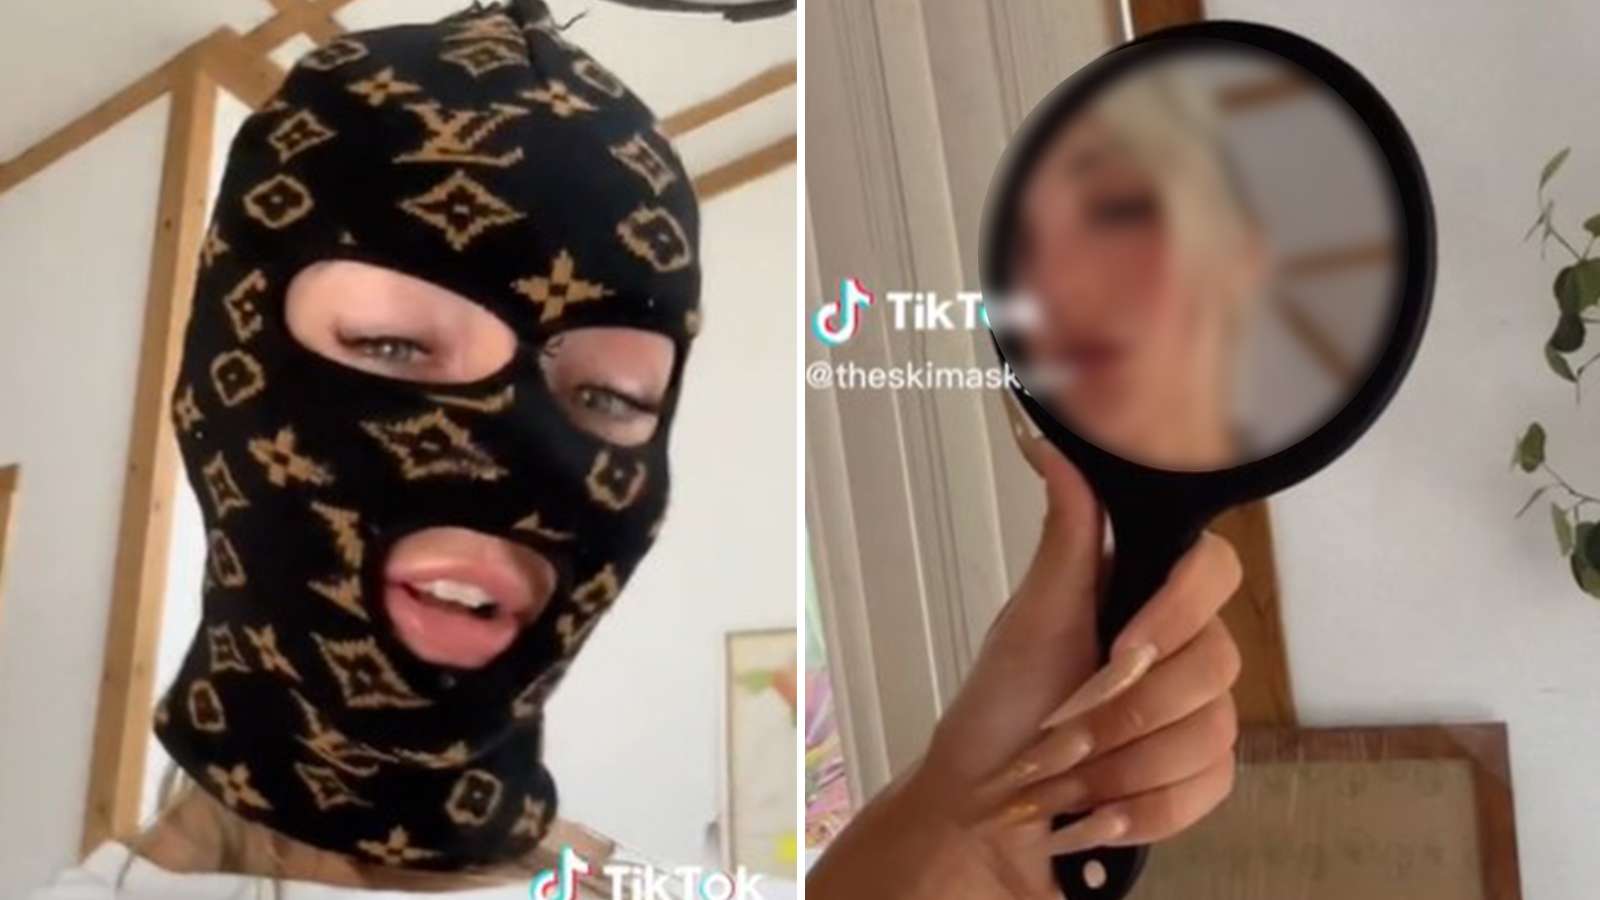 SkiMaskGirl goes viral for face reveal